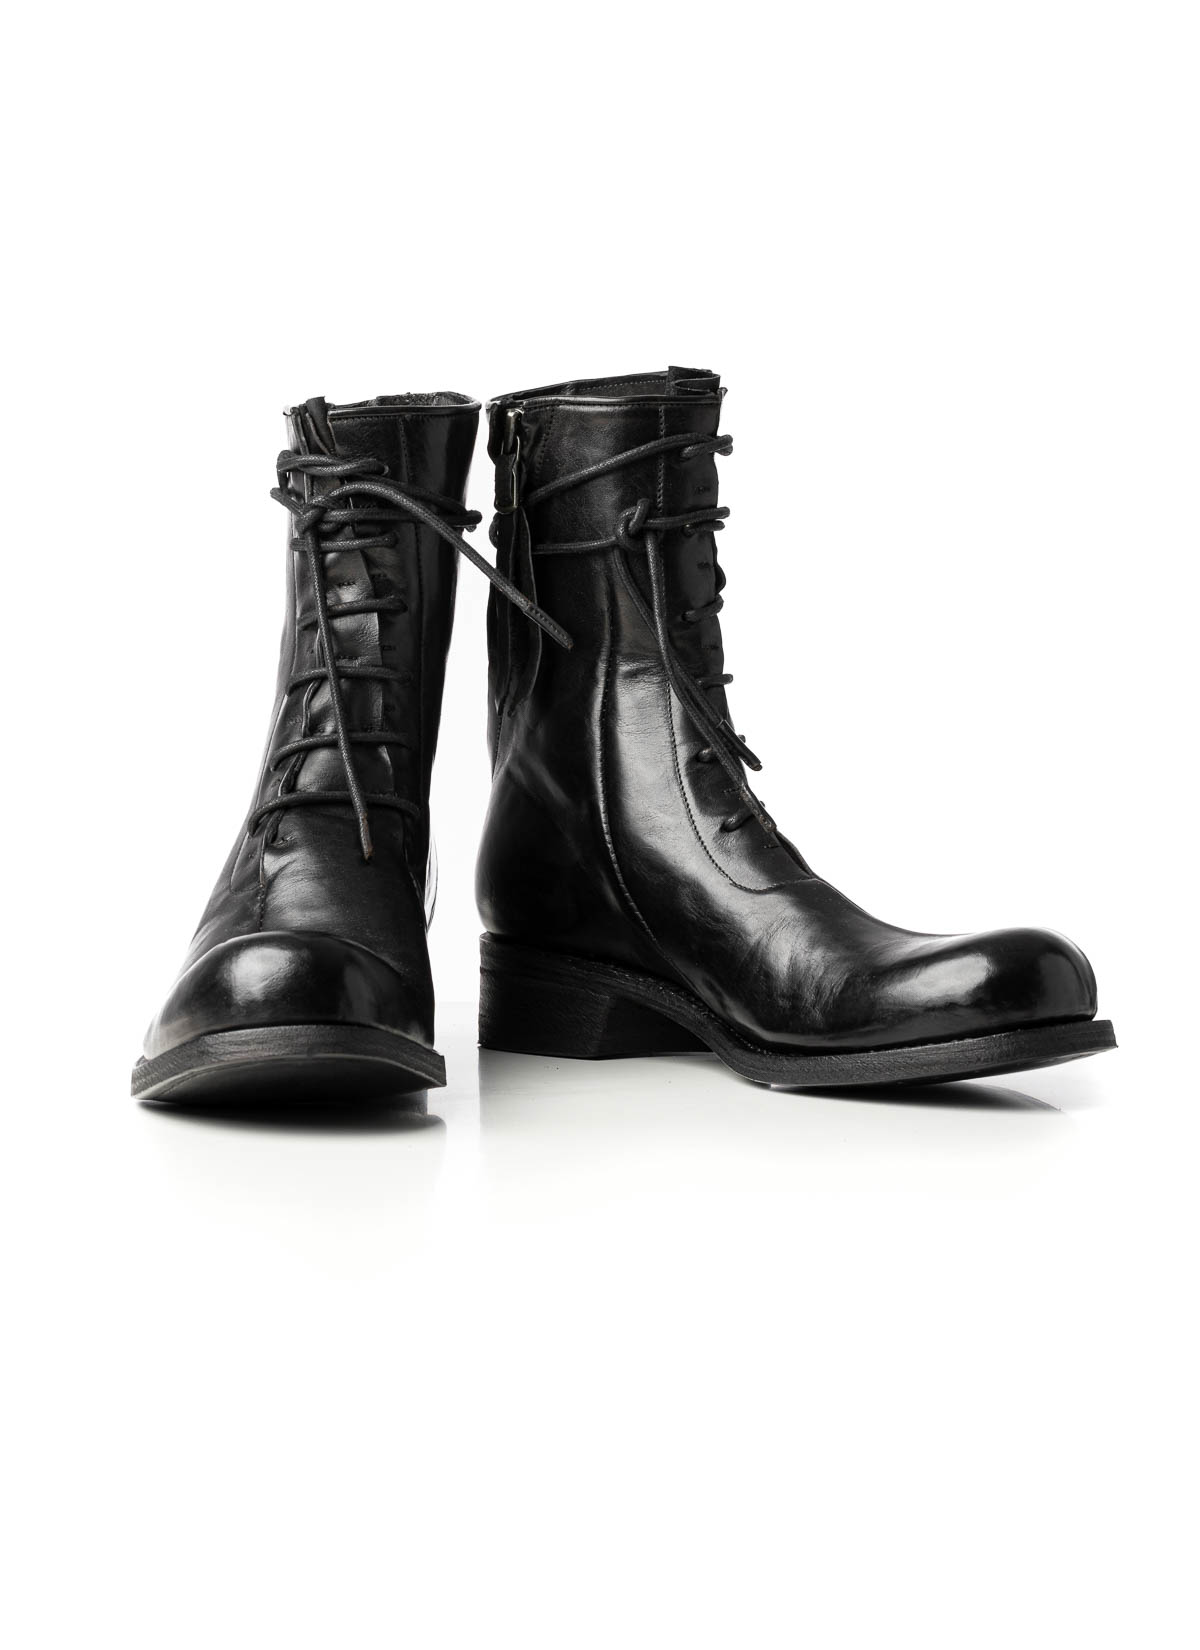 hide-m | LEON EMANUEL BLANCK Distortion Work Boot, black leather